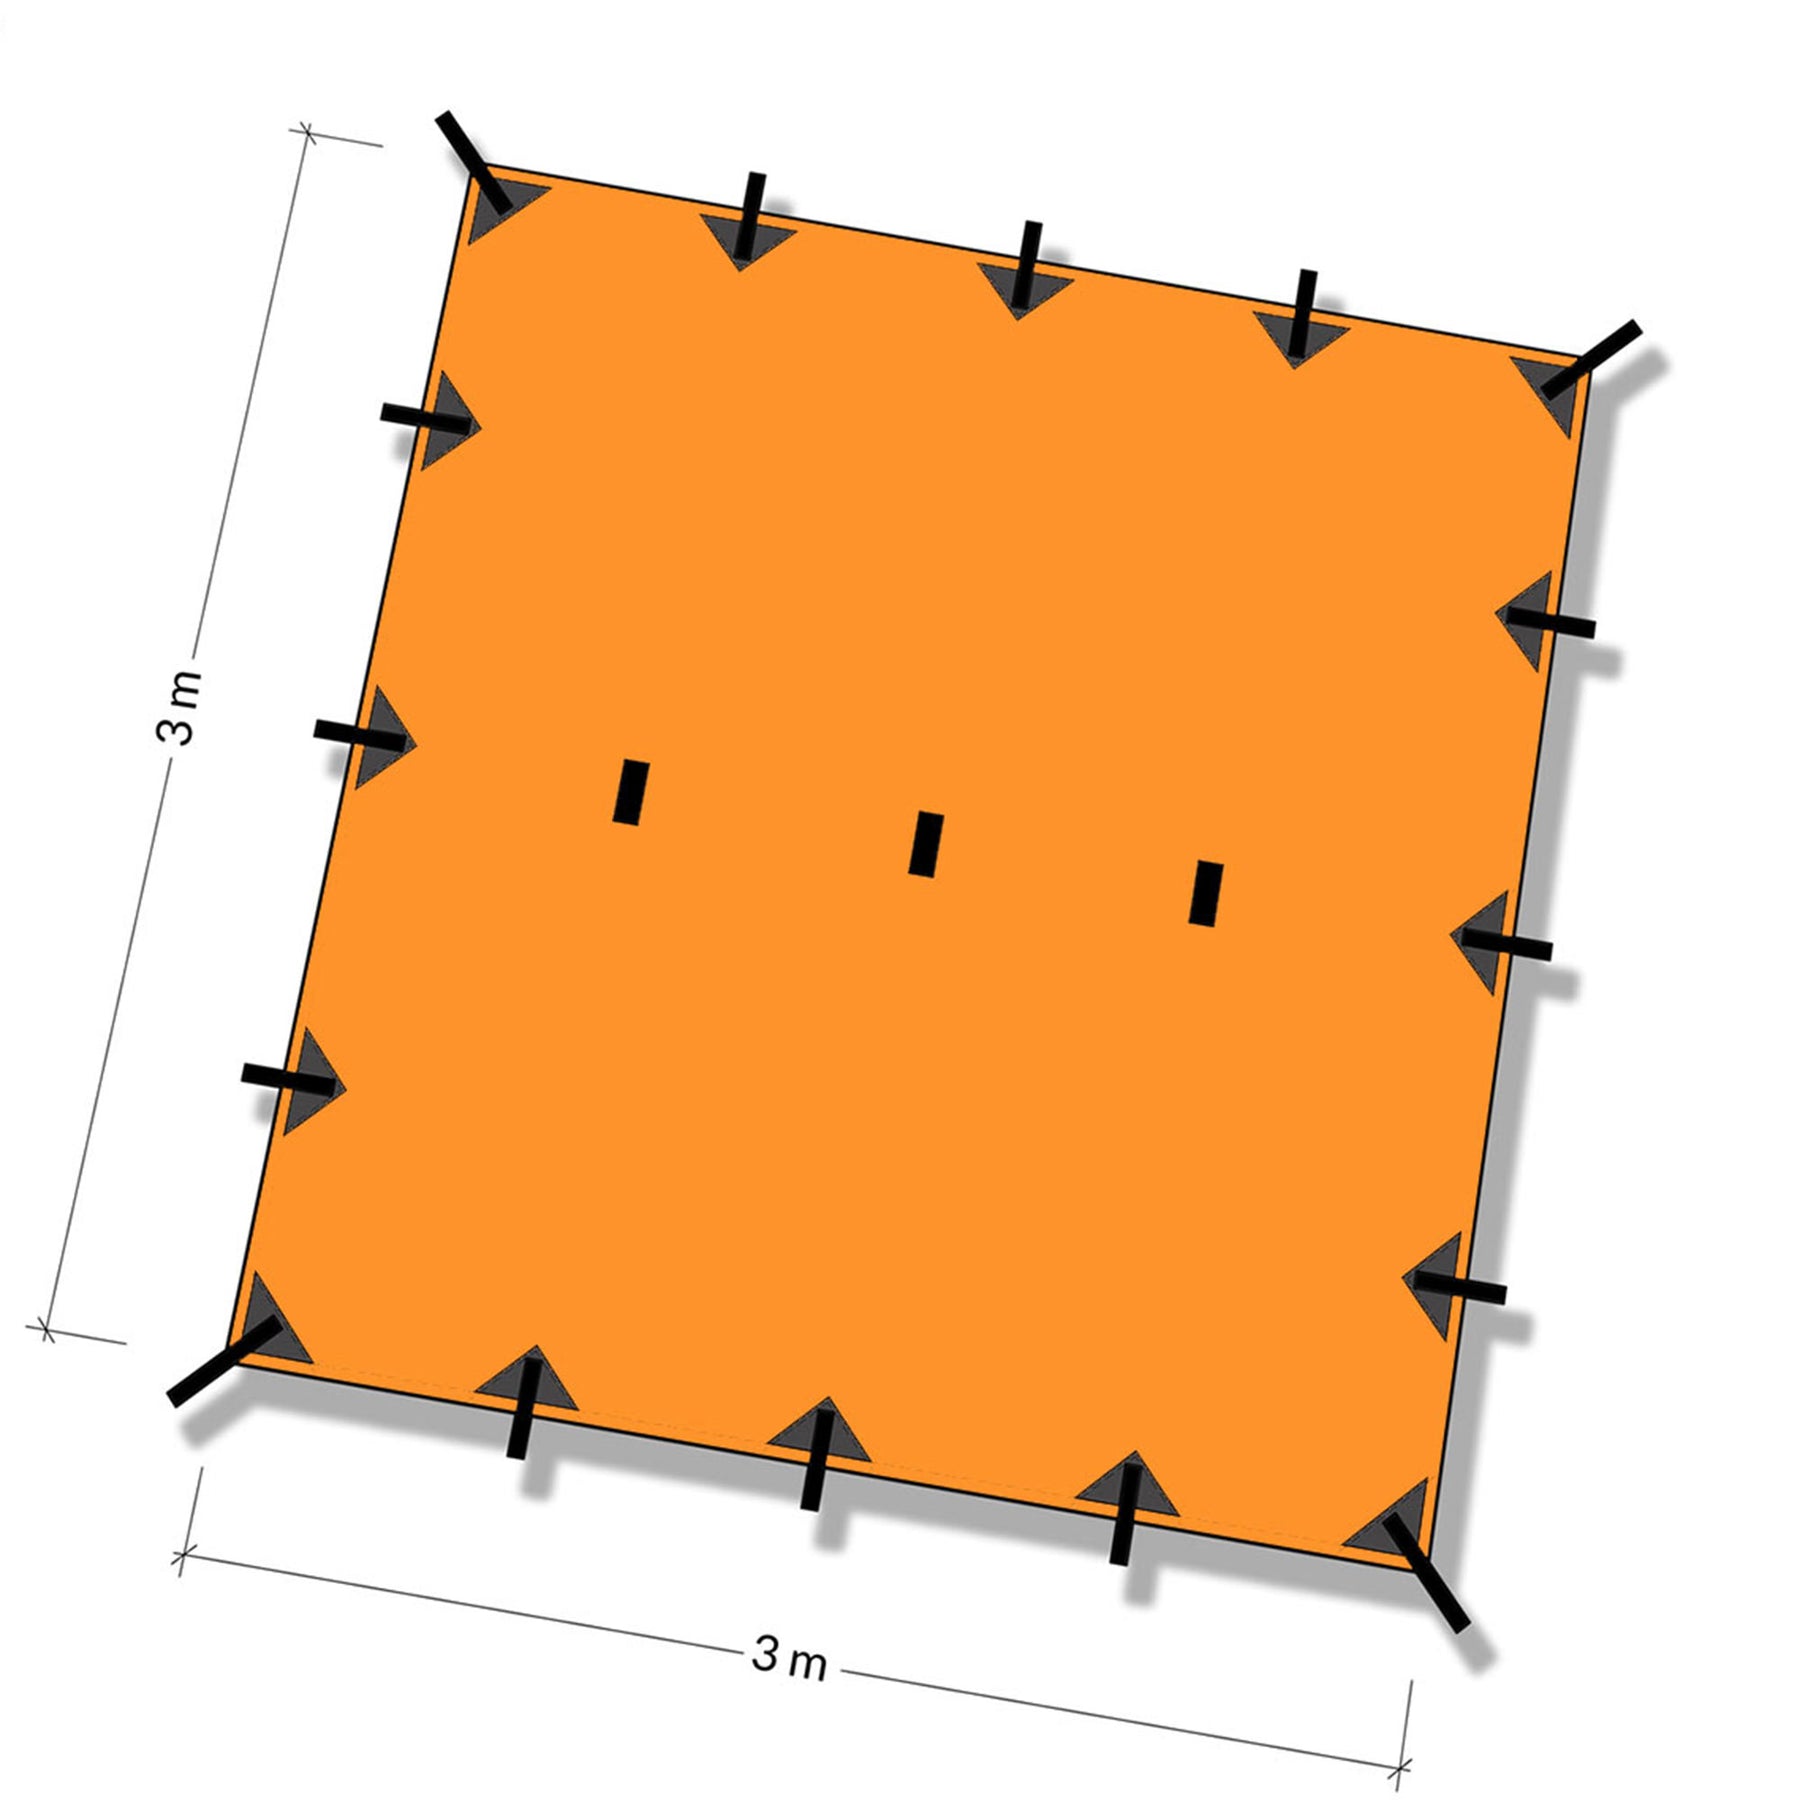 DD Tarp 3x3 sunset orange - illustrazione con quote per misura in metri